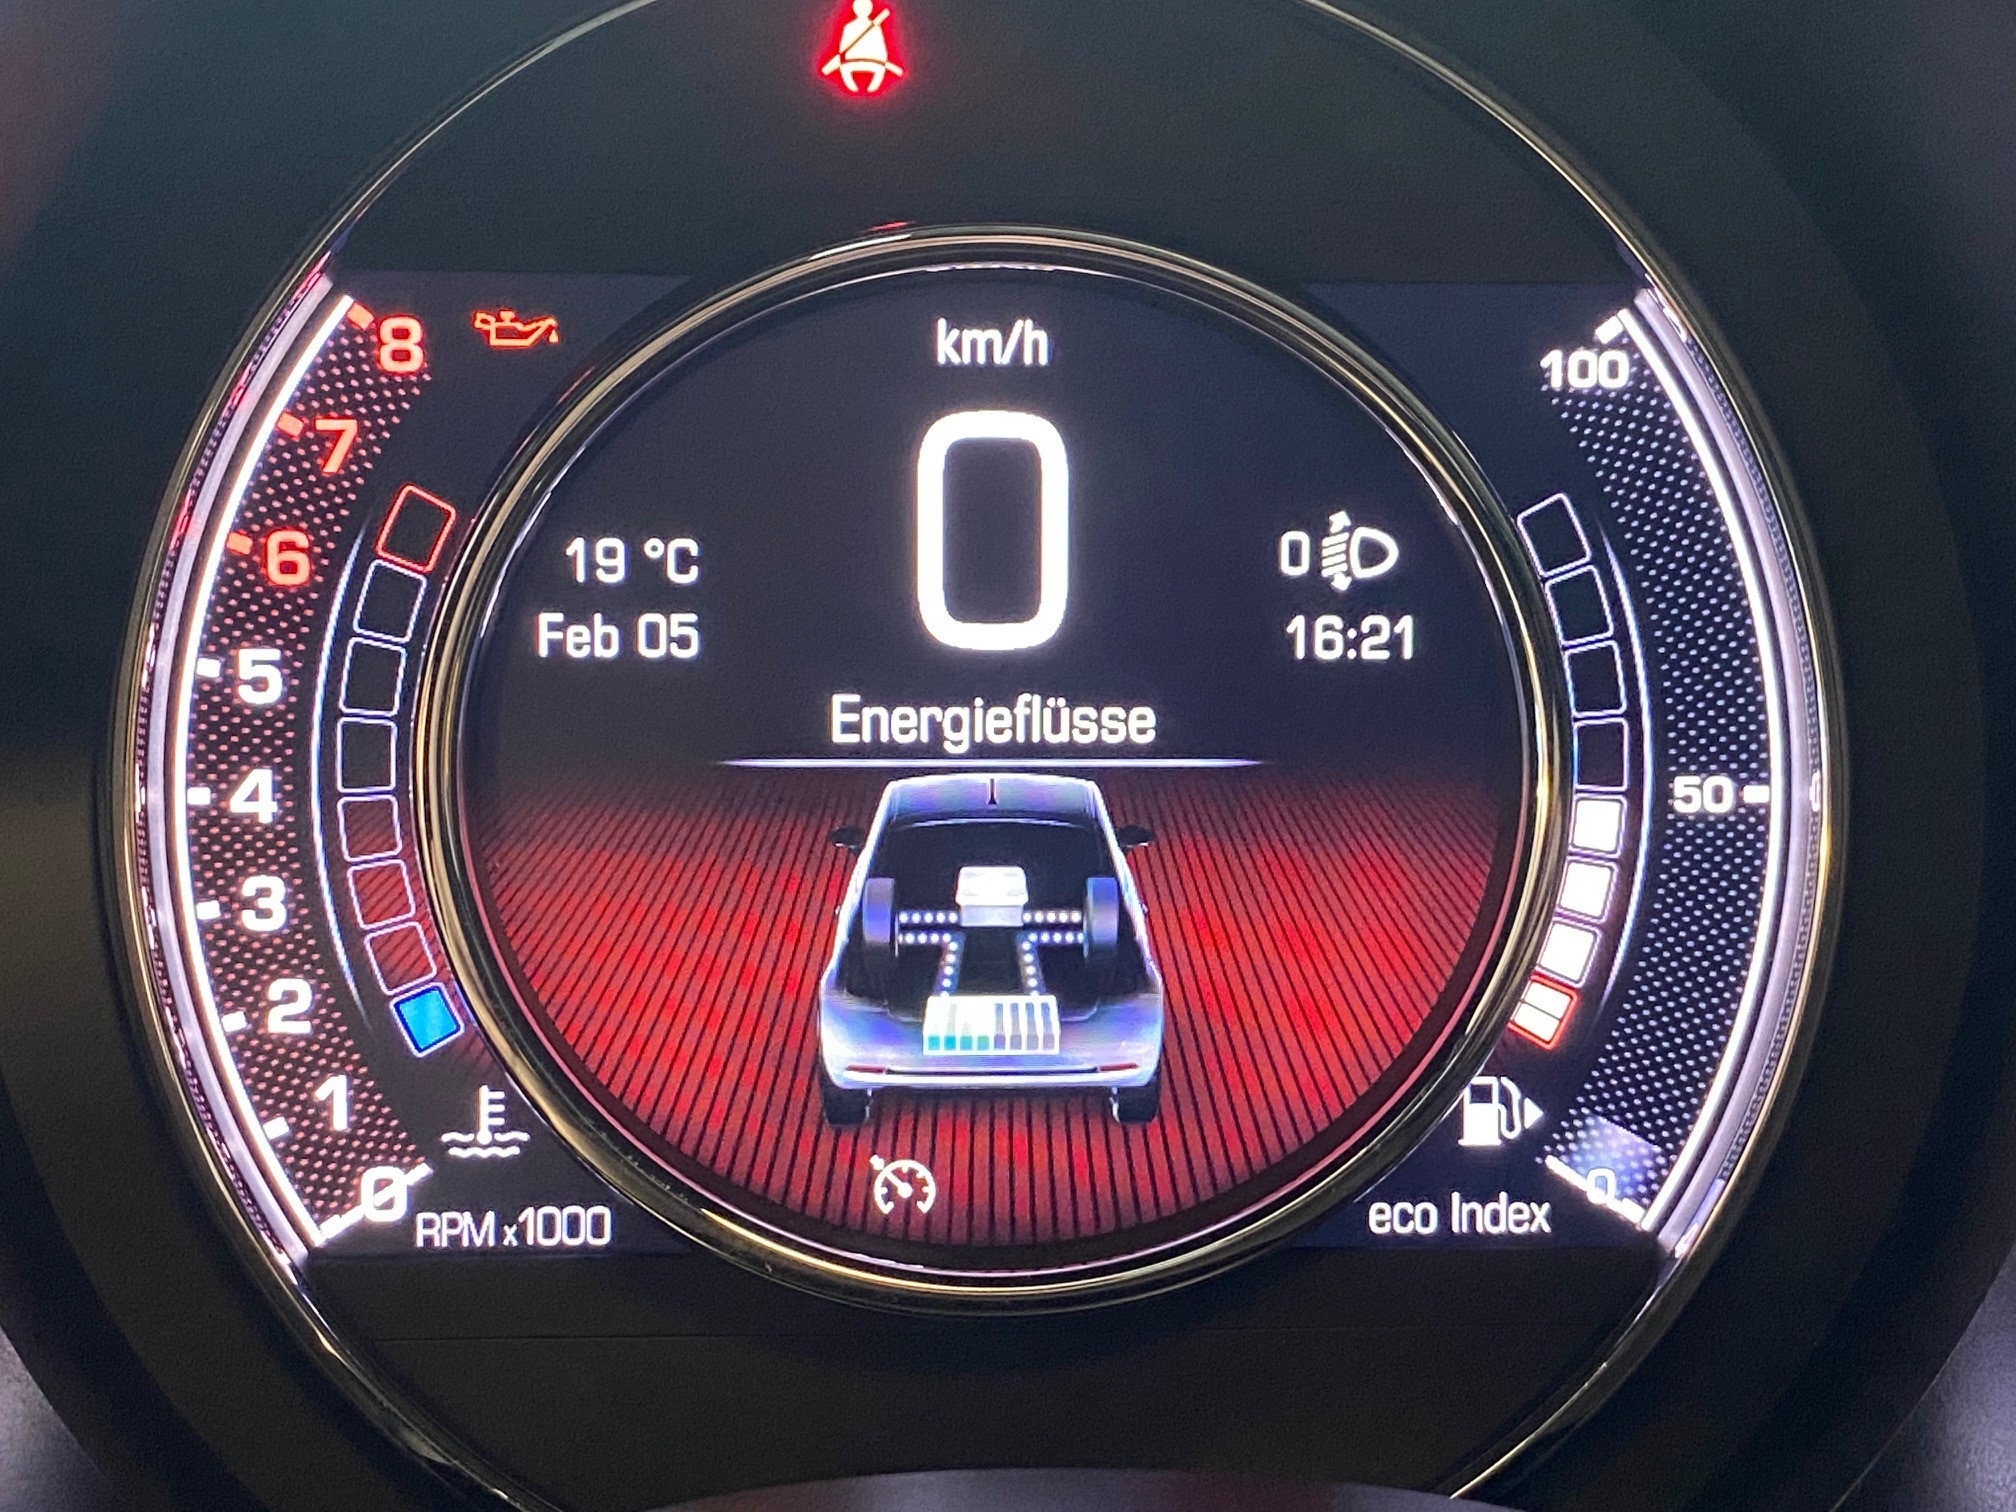 Der neue Fiat 500 Hybrid Launch Edition – Zeughaus-Garage AG